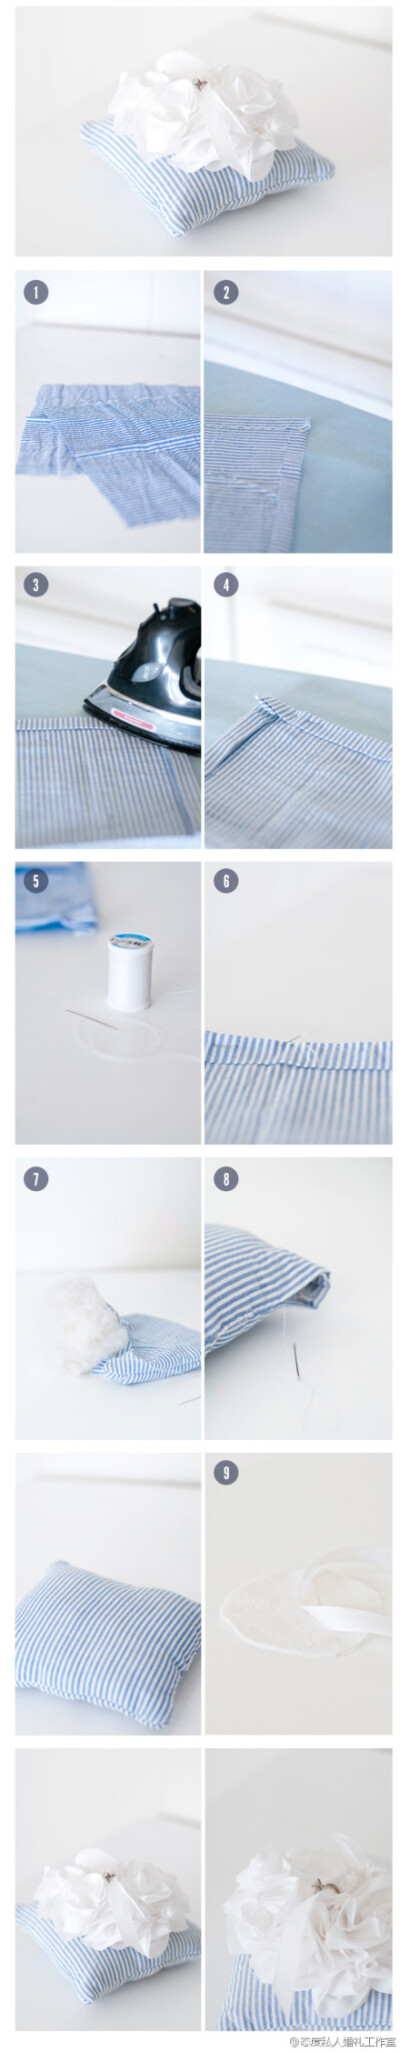 哇，超级清爽的蓝白条纹戒枕！！！马上加入婚礼DIY清单！！！